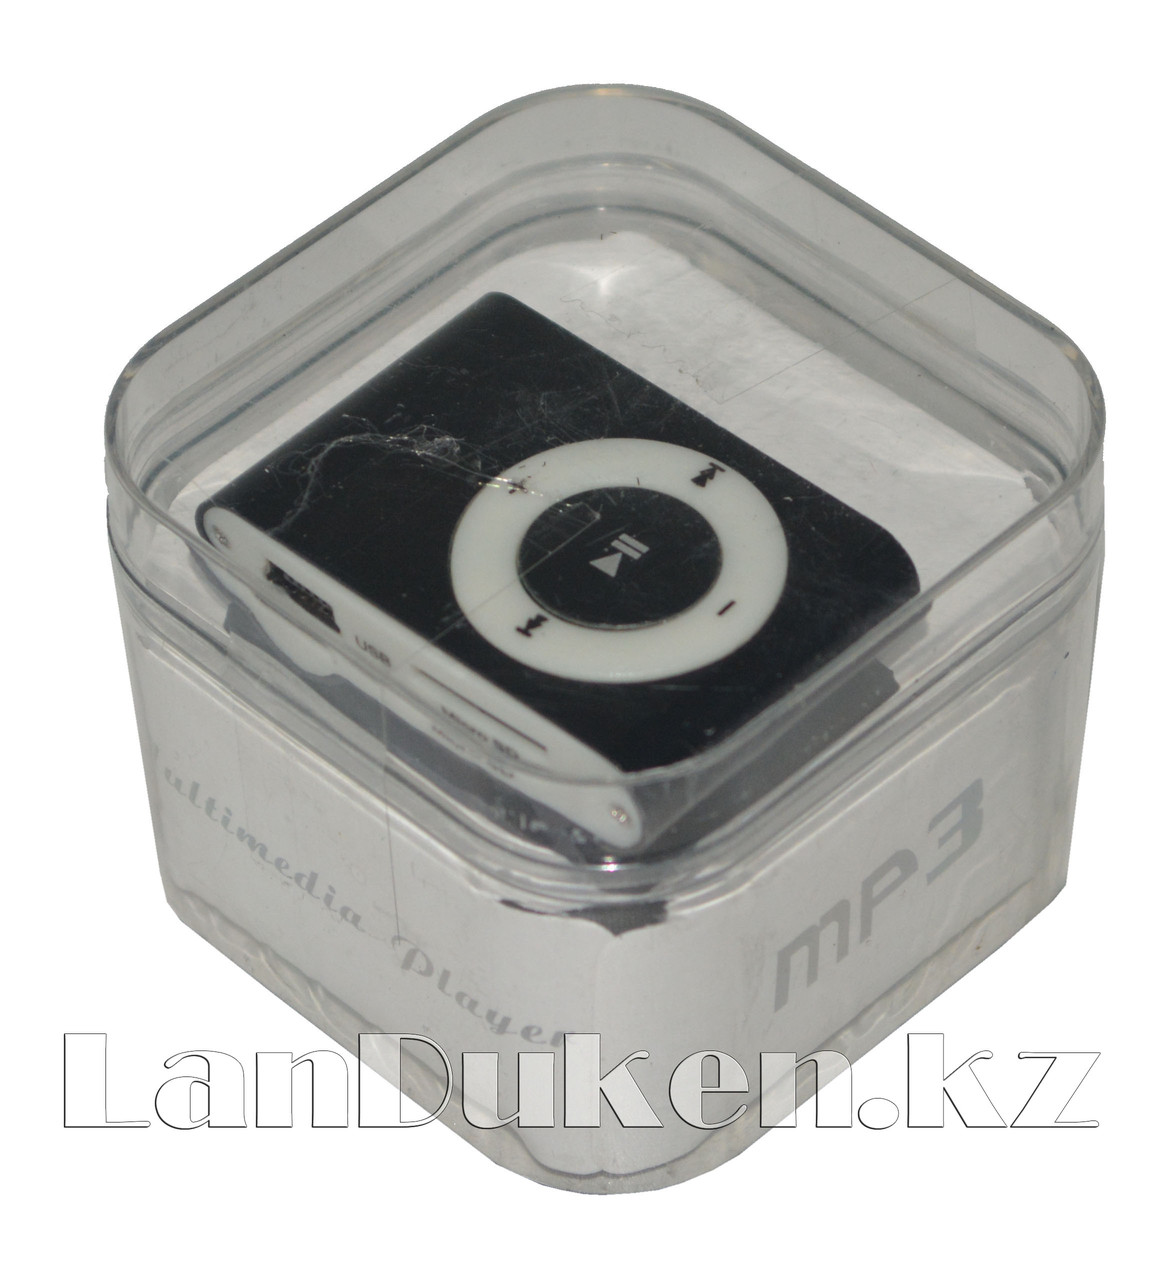 MP3-плеер мини AF-093 на клипсе (черный)